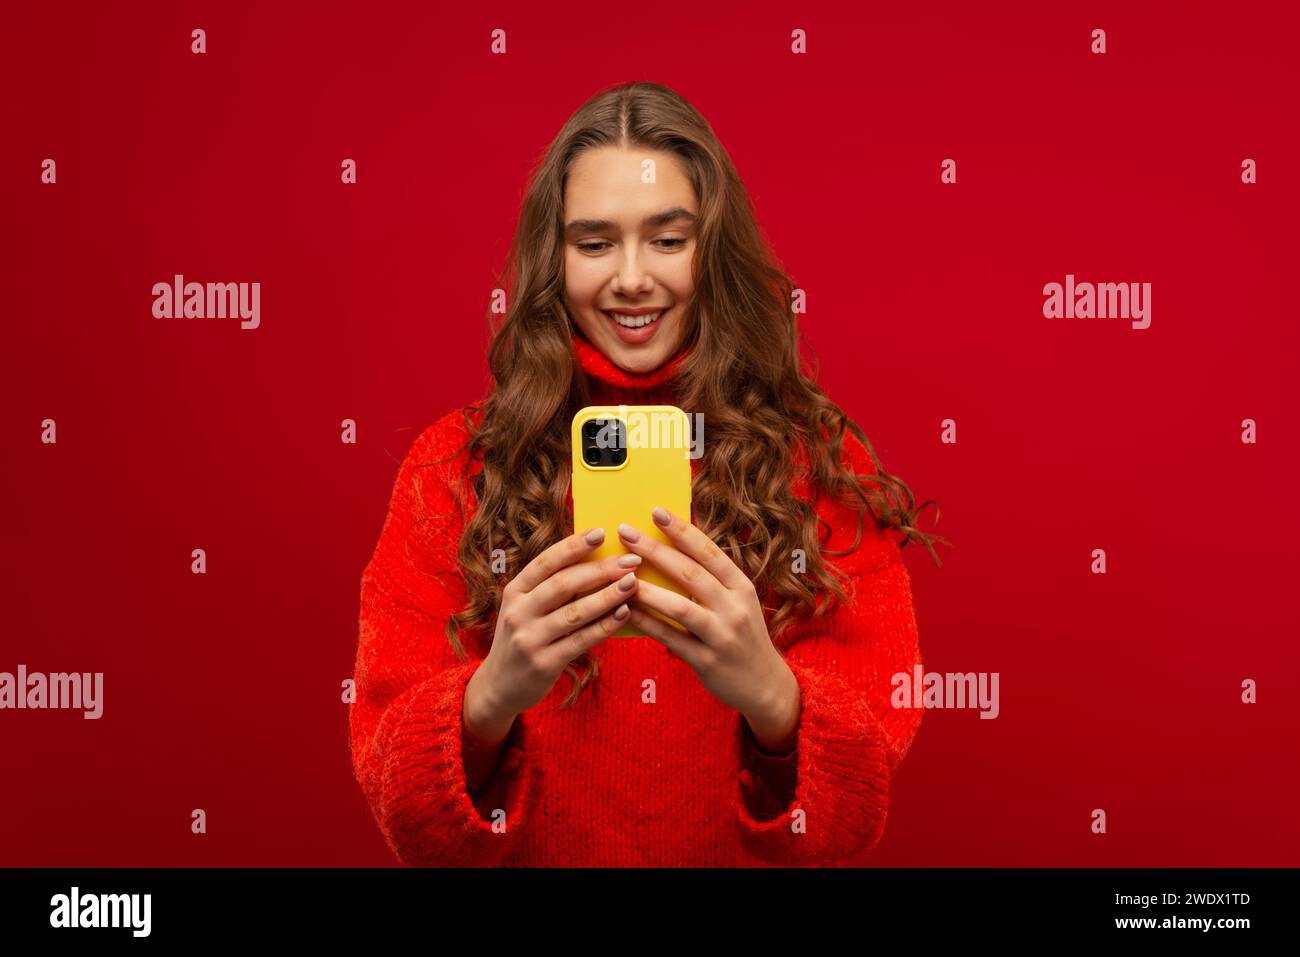 Ritratto di una giovane donna emotiva sorridente con capelli ricci Generation Z in un maglione rosso utilizzando uno smartphone moderno su uno sfondo rosso scattato in studio Foto Stock